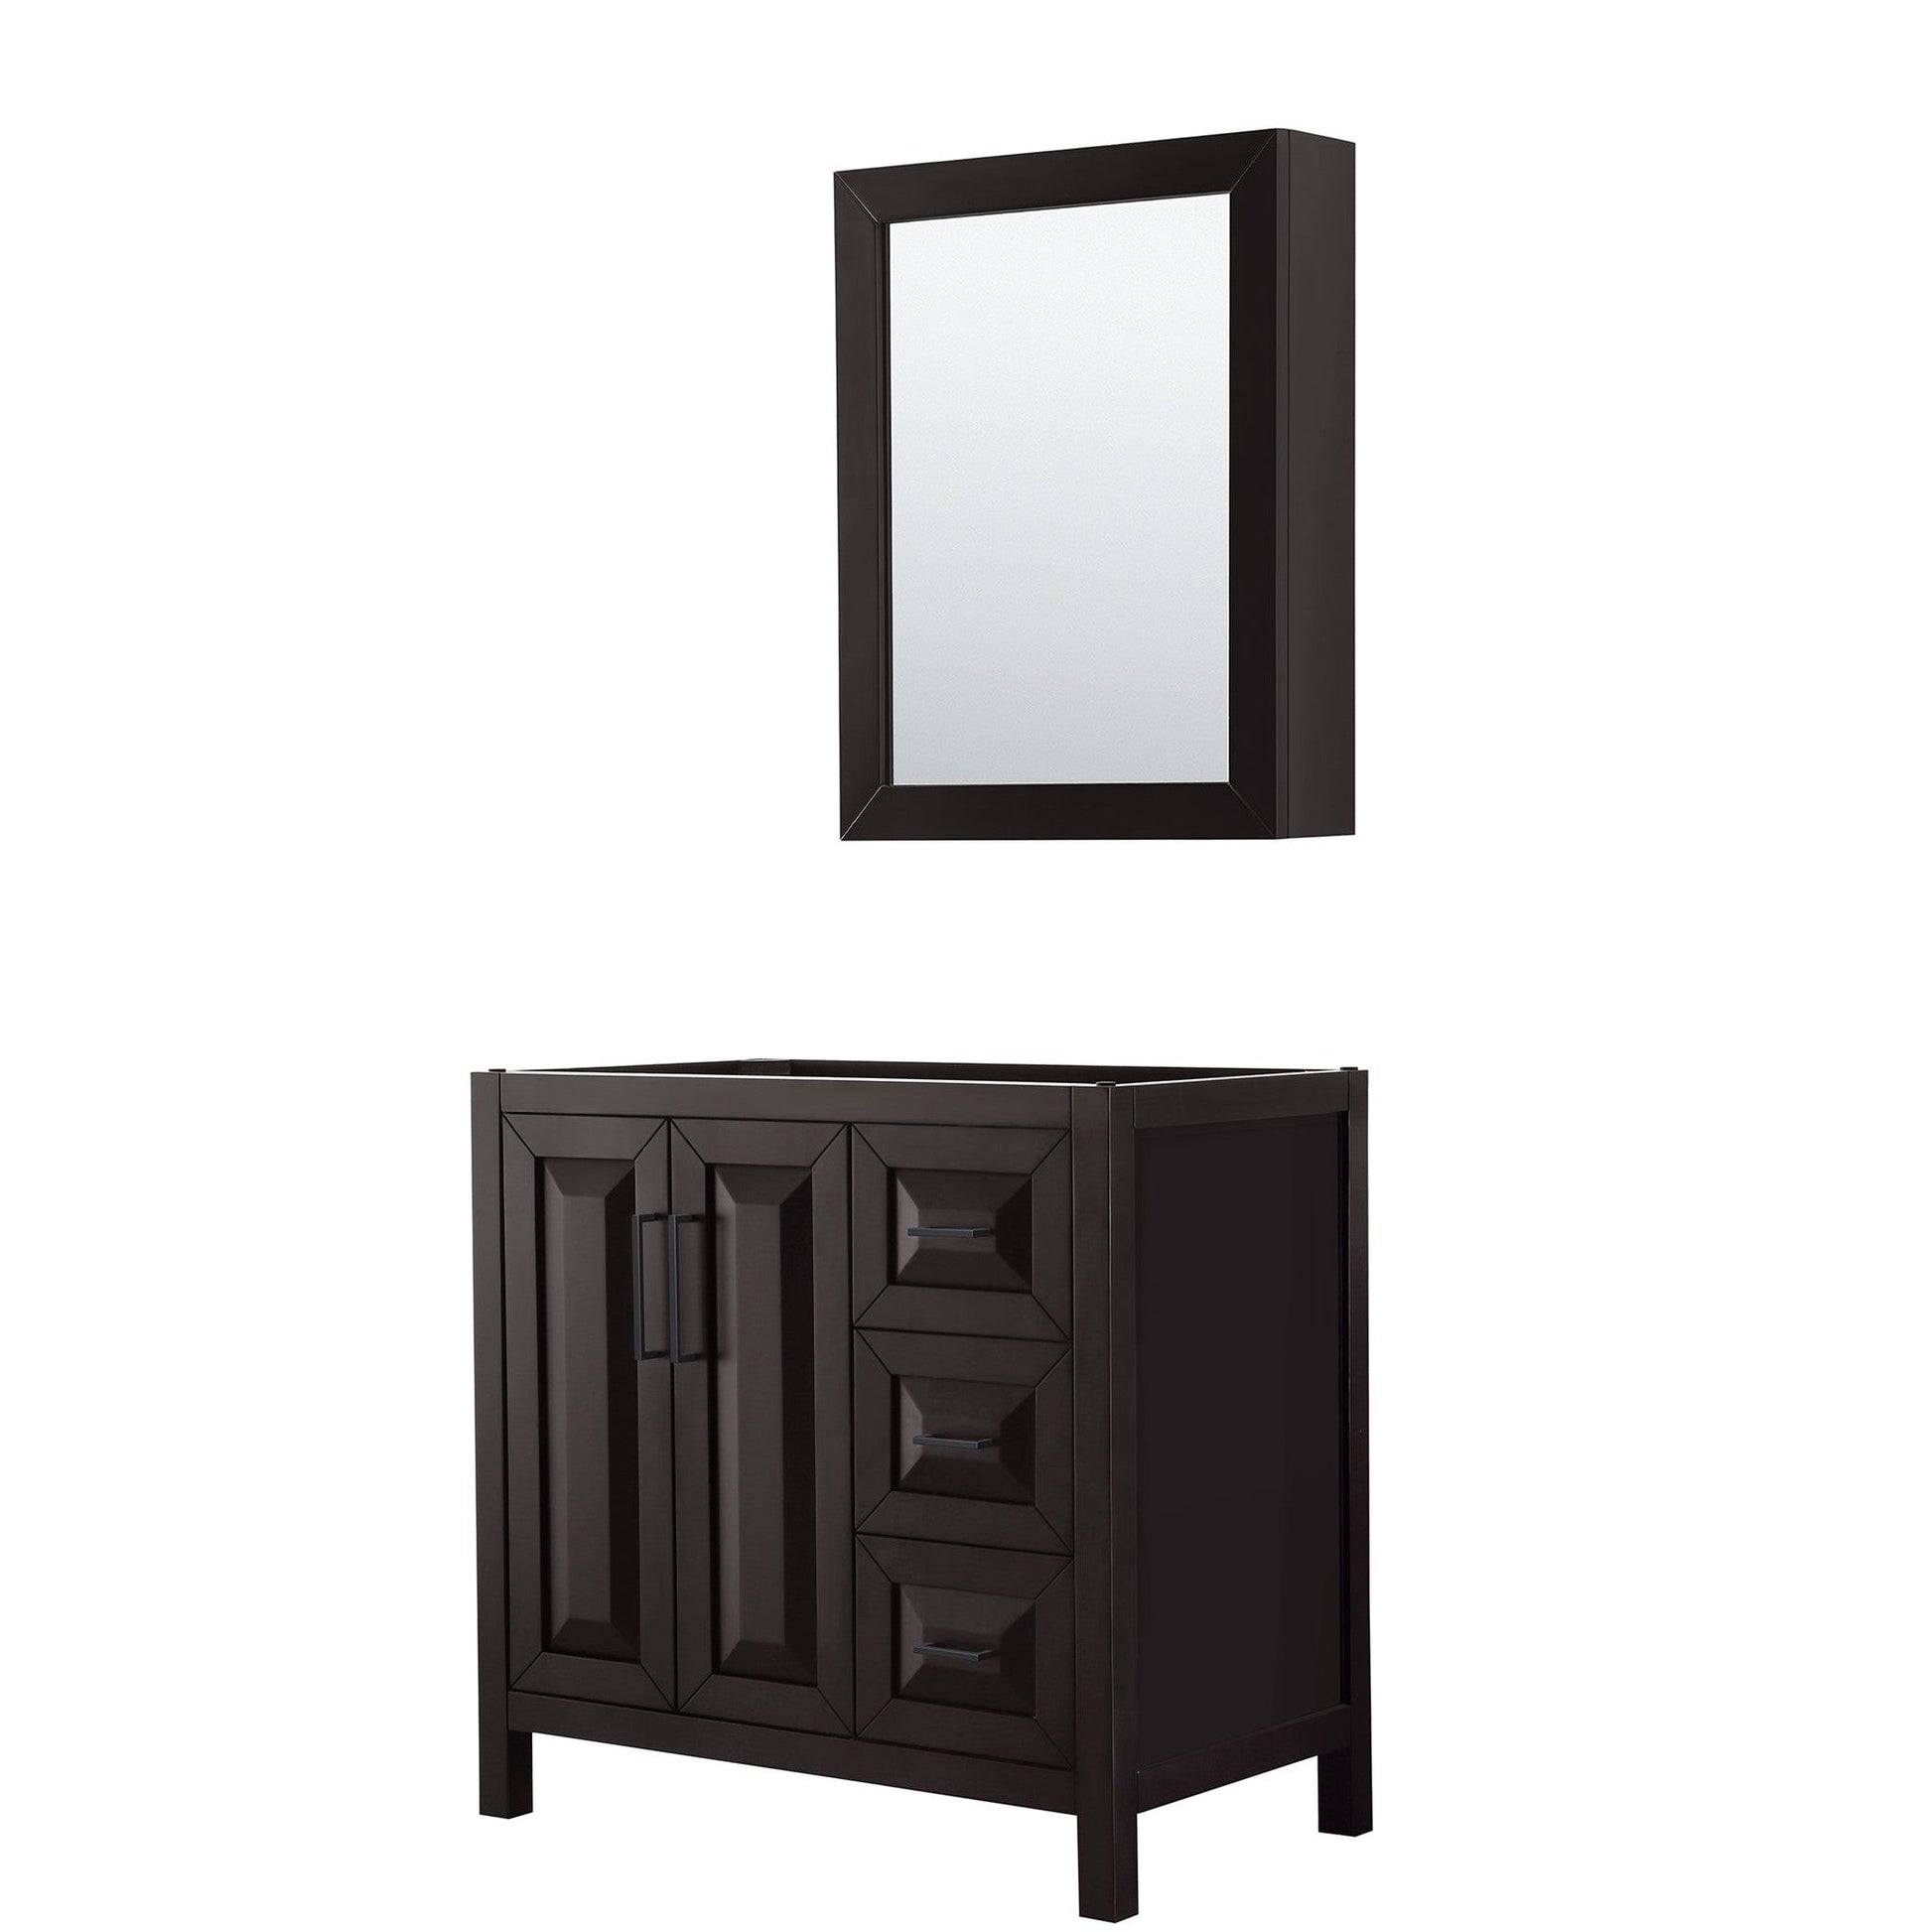 Daria 36" Single Bathroom Vanity in Dark Espresso, No Countertop, No Sink, Matte Black Trim, Medicine Cabinet